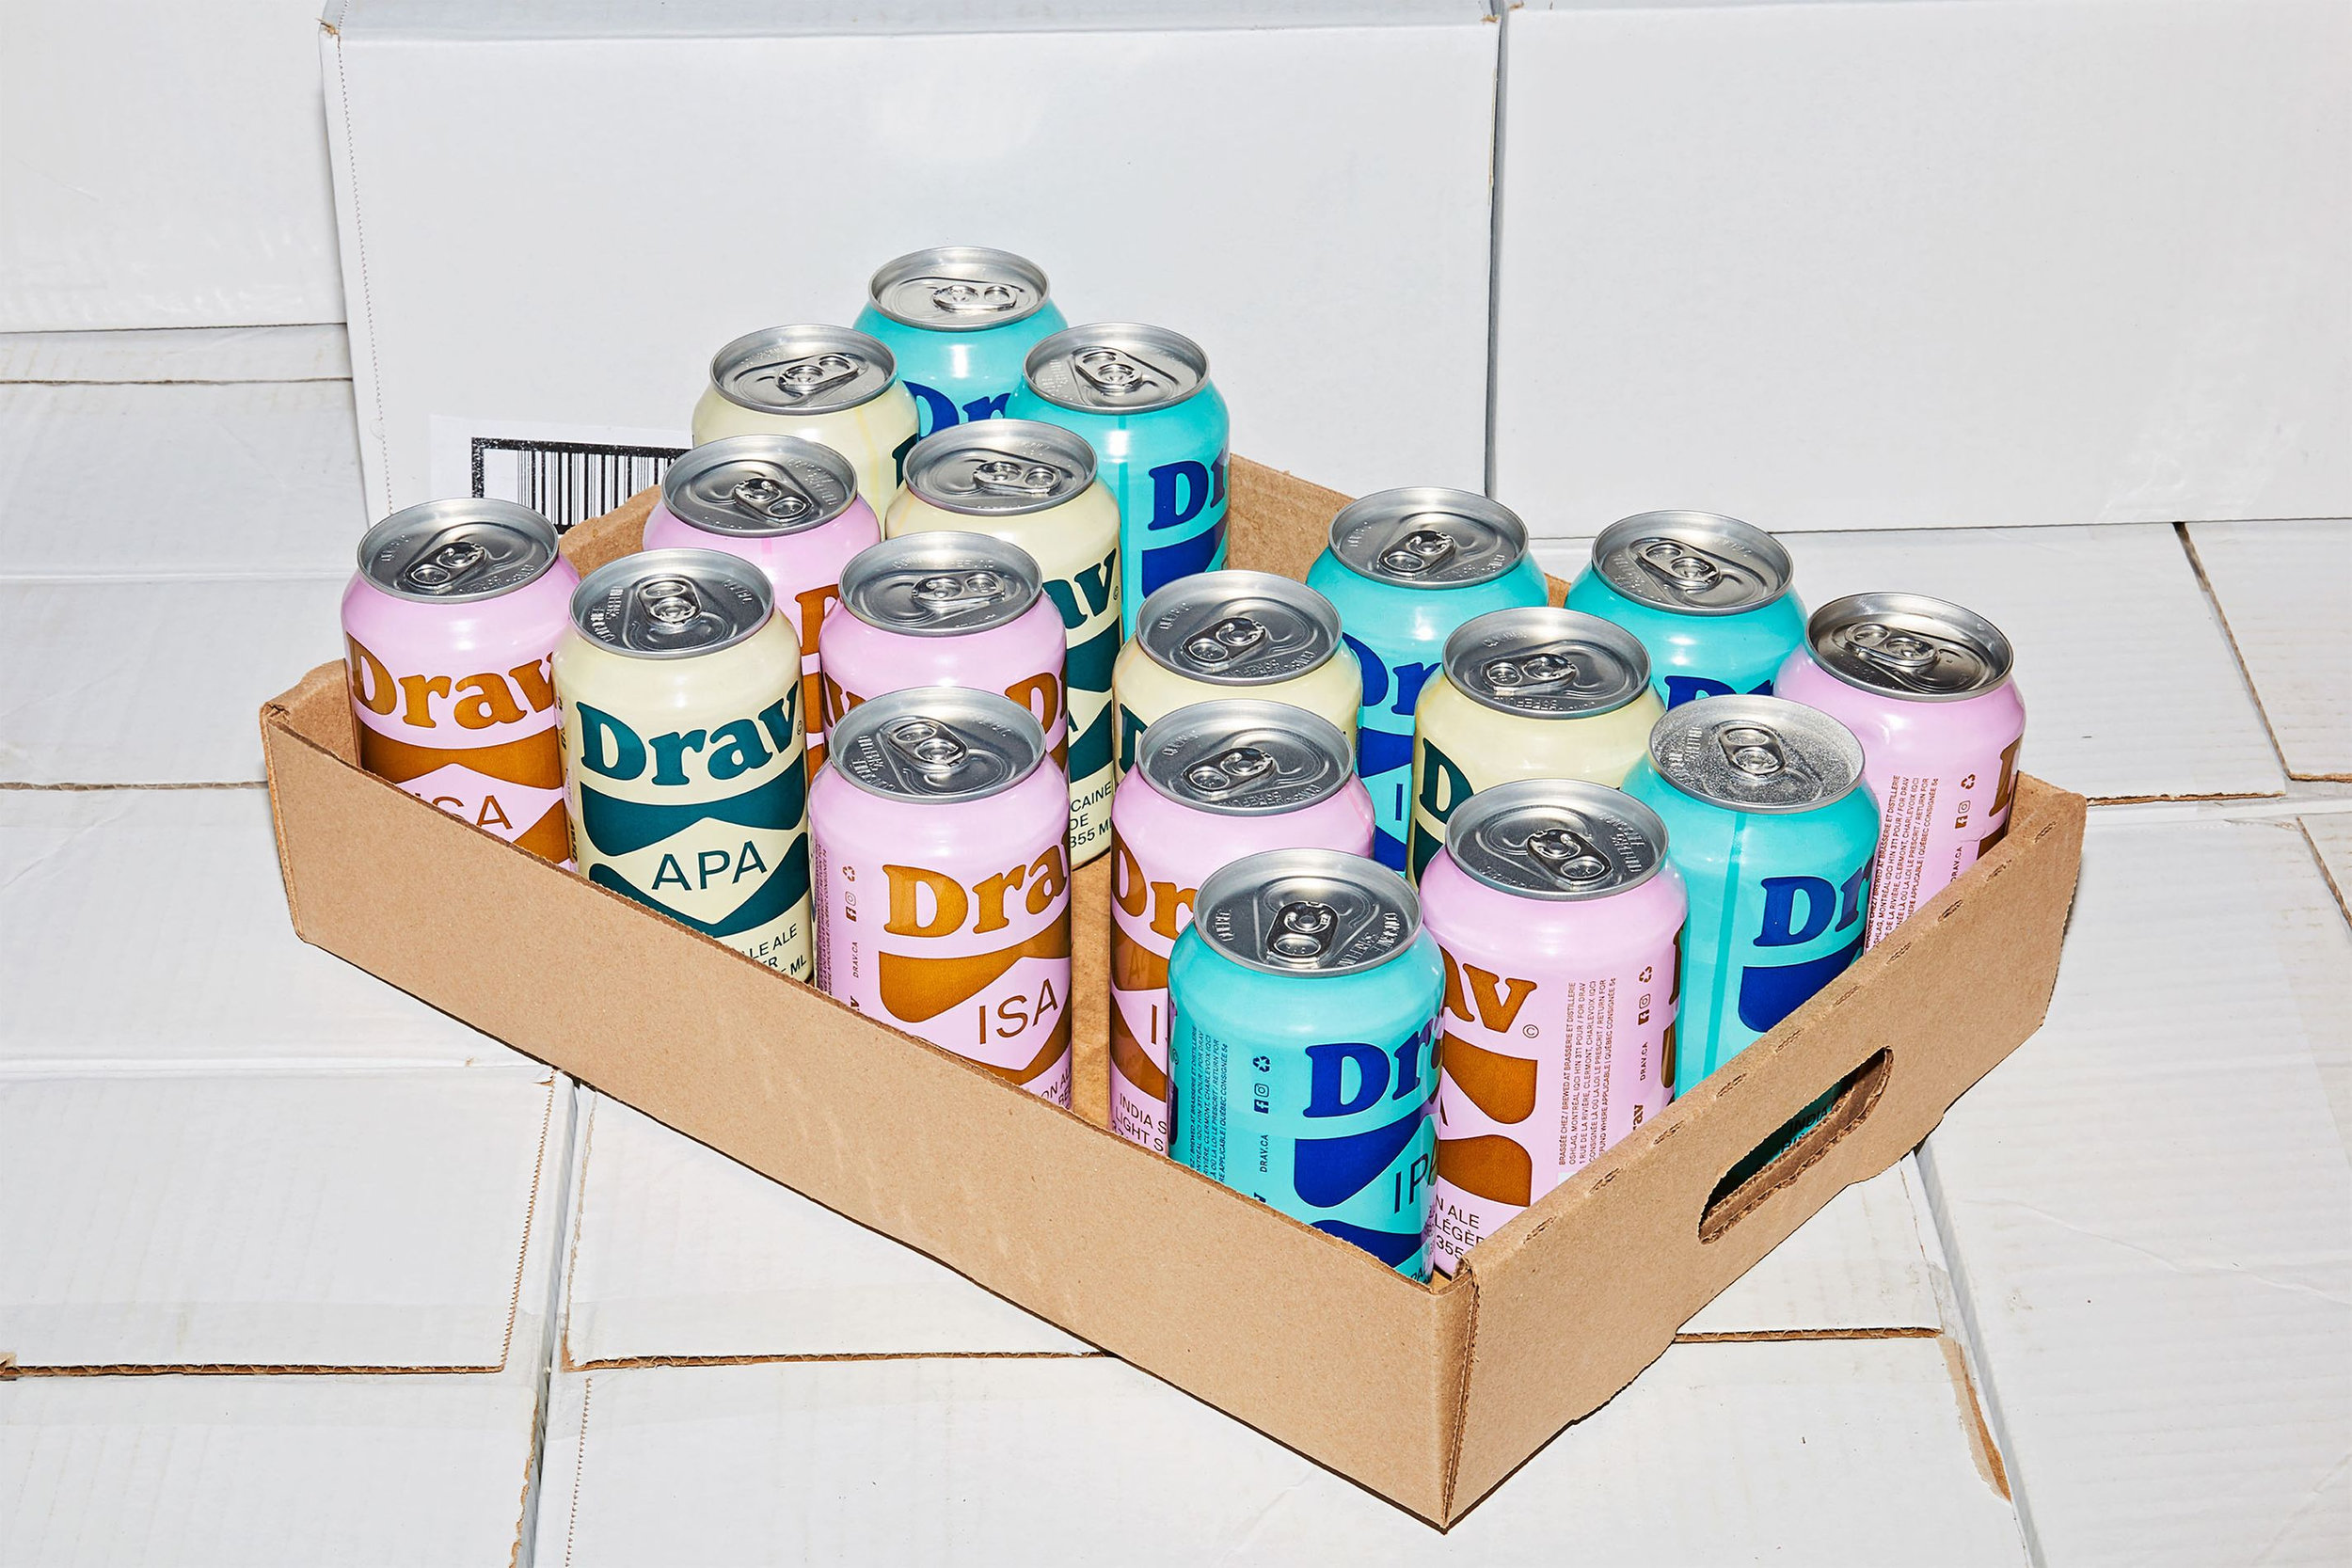 Beer & Branding: Drav Bière